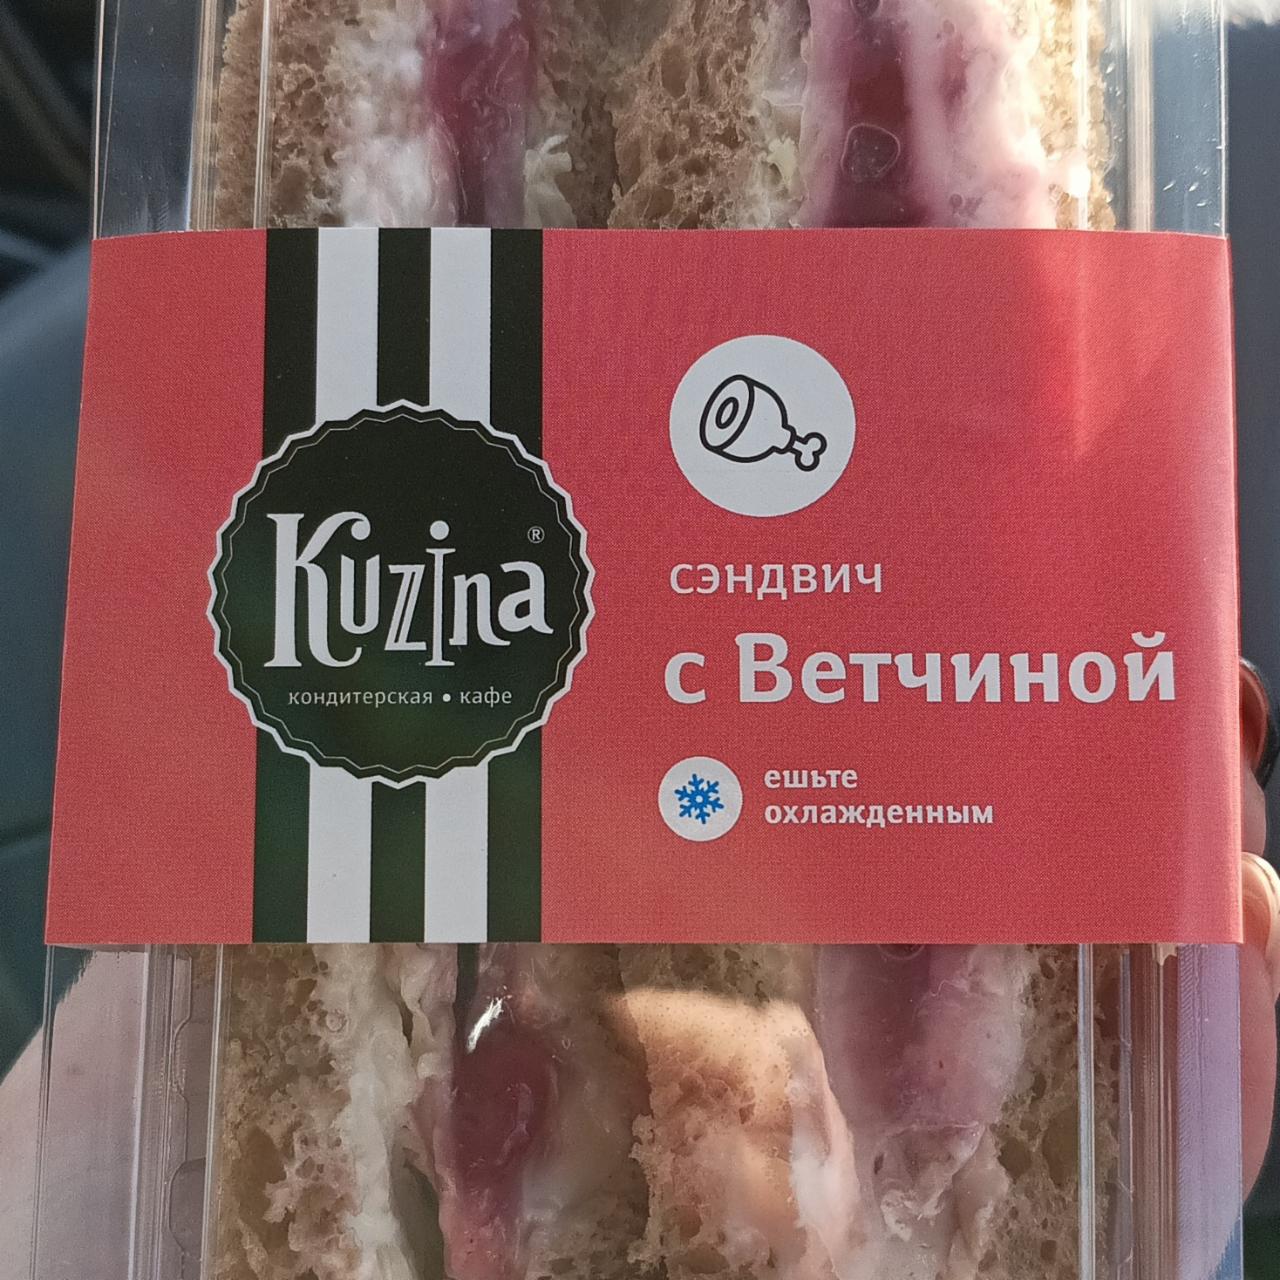 Фото - Сендвич с ветчиной Кузина Kuzina